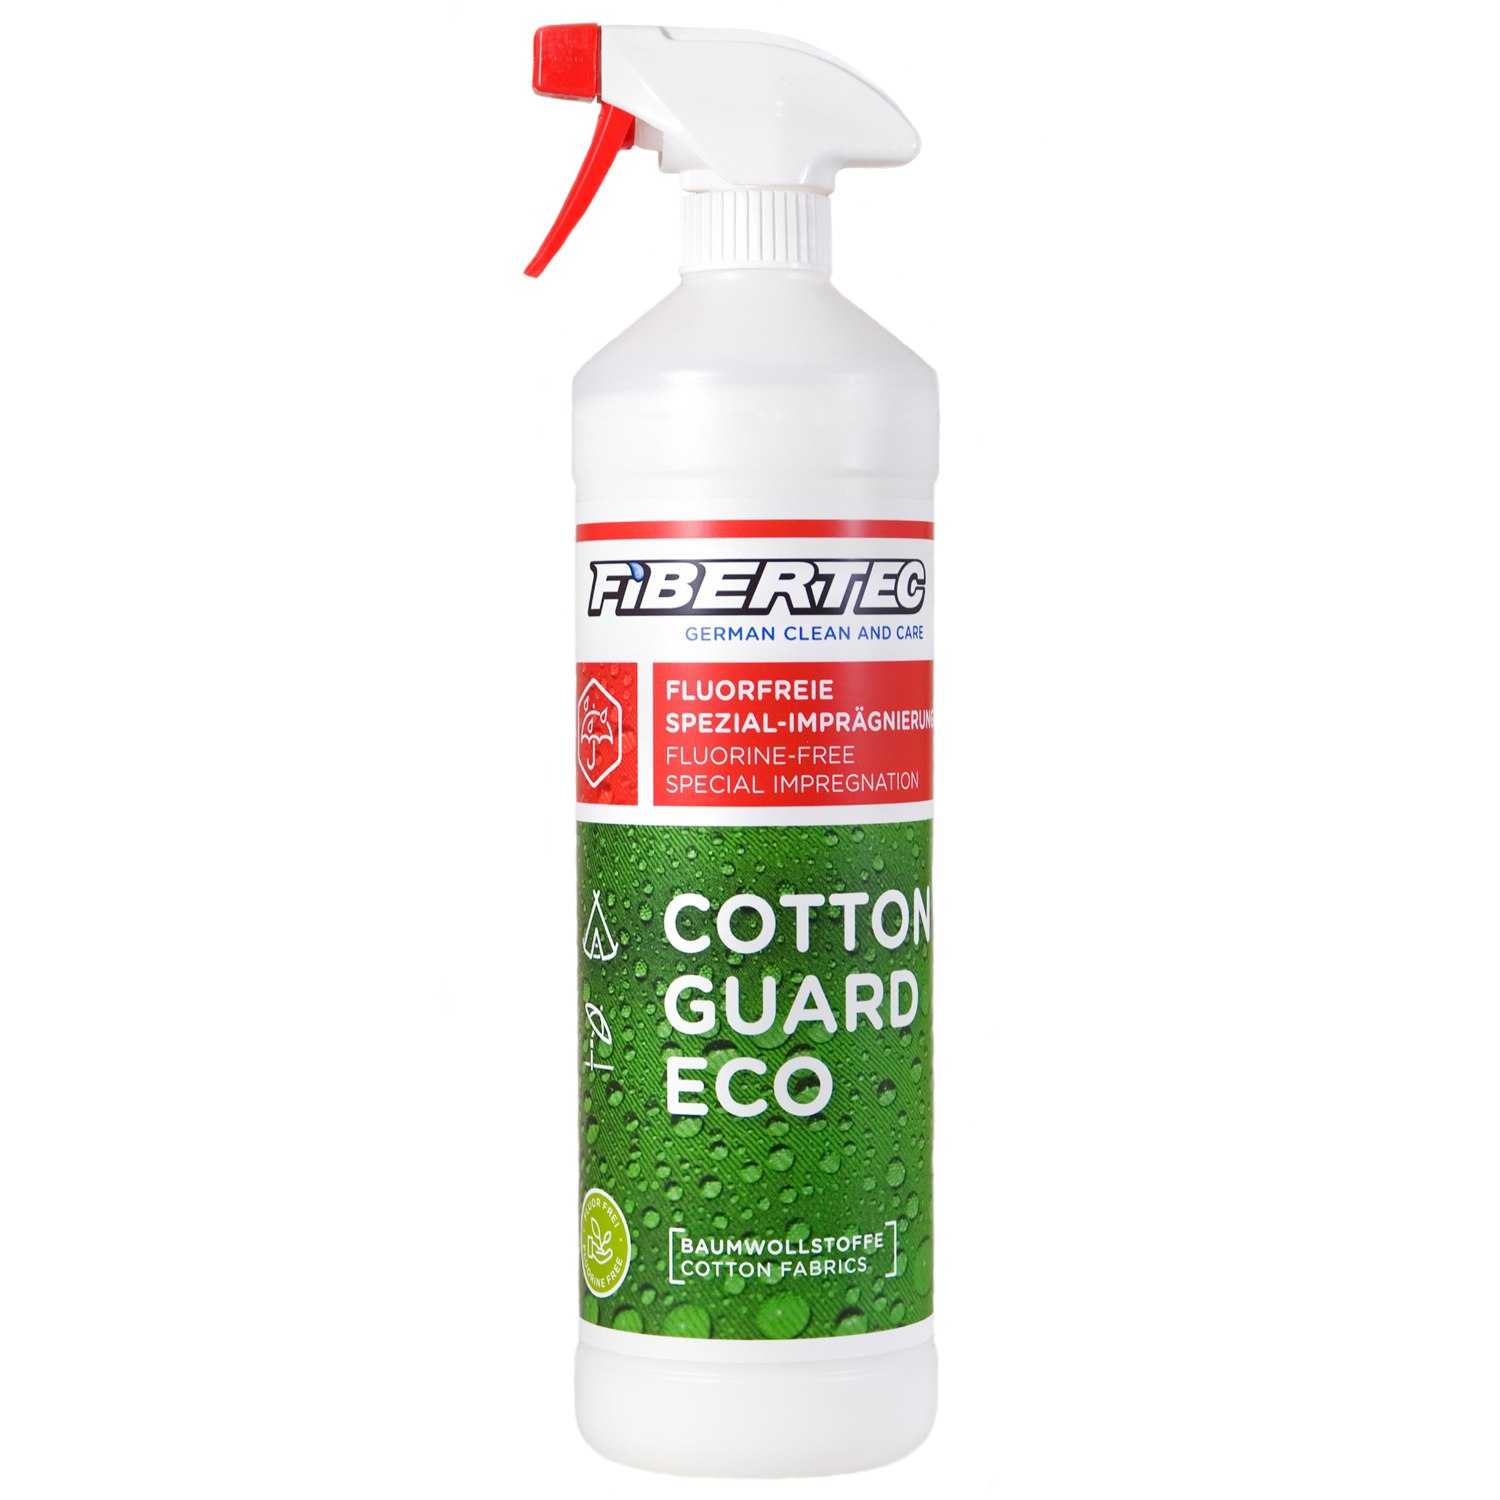 Produktbild von Fibertec Cotton Guard Eco Baumwoll Spezialimprägnierung - 1000ml